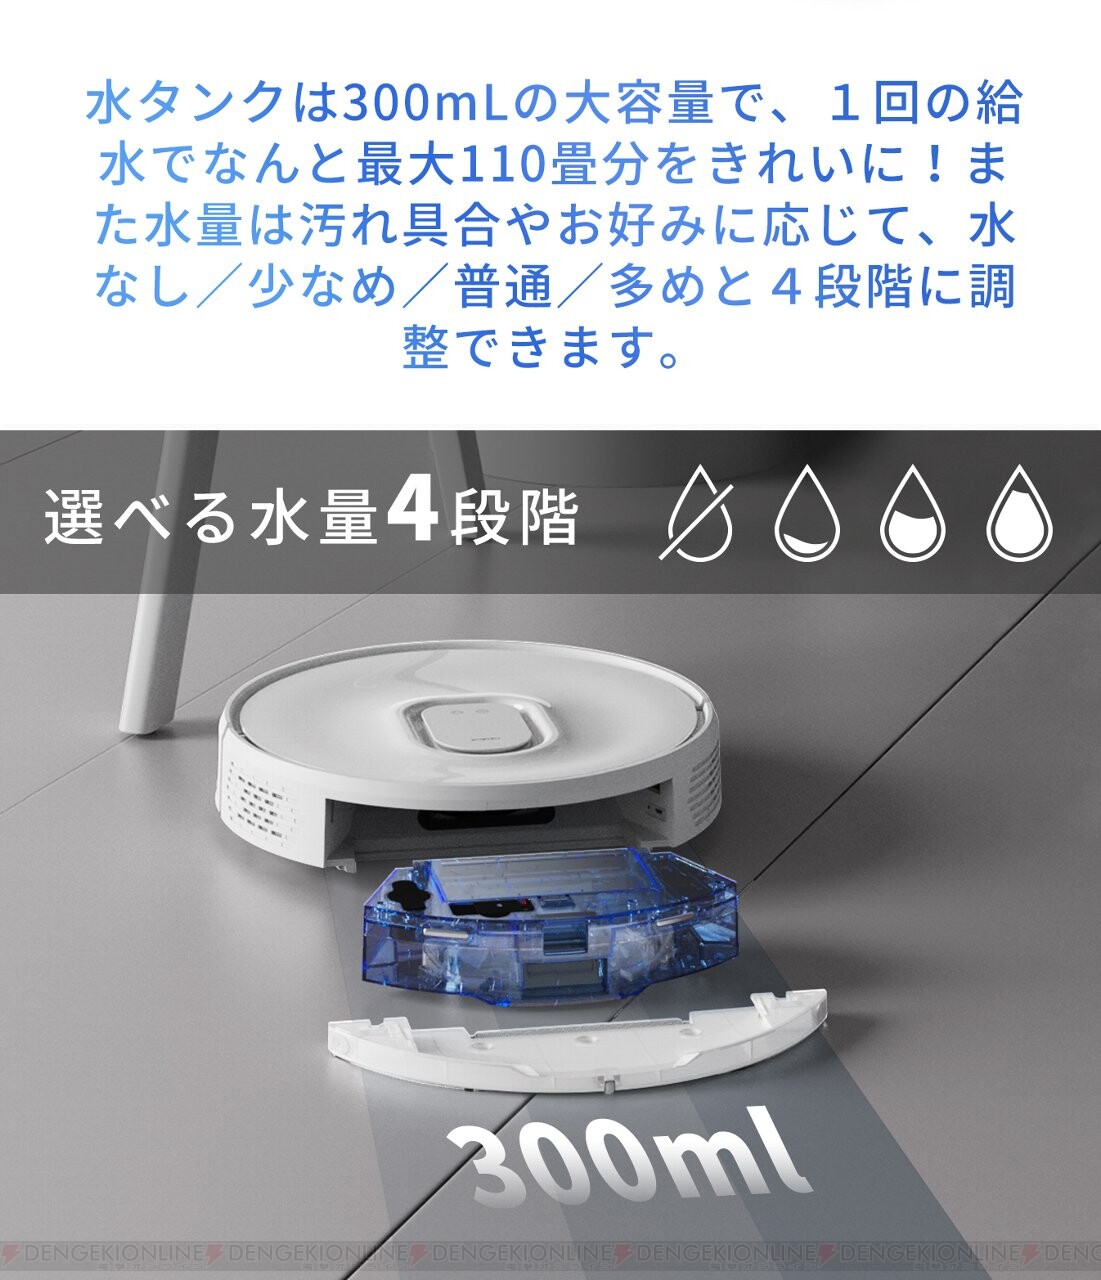 Honiture Q6 ロボット掃除機 自動ゴミ収集 Wi-fi接続 アプリ対応 ...